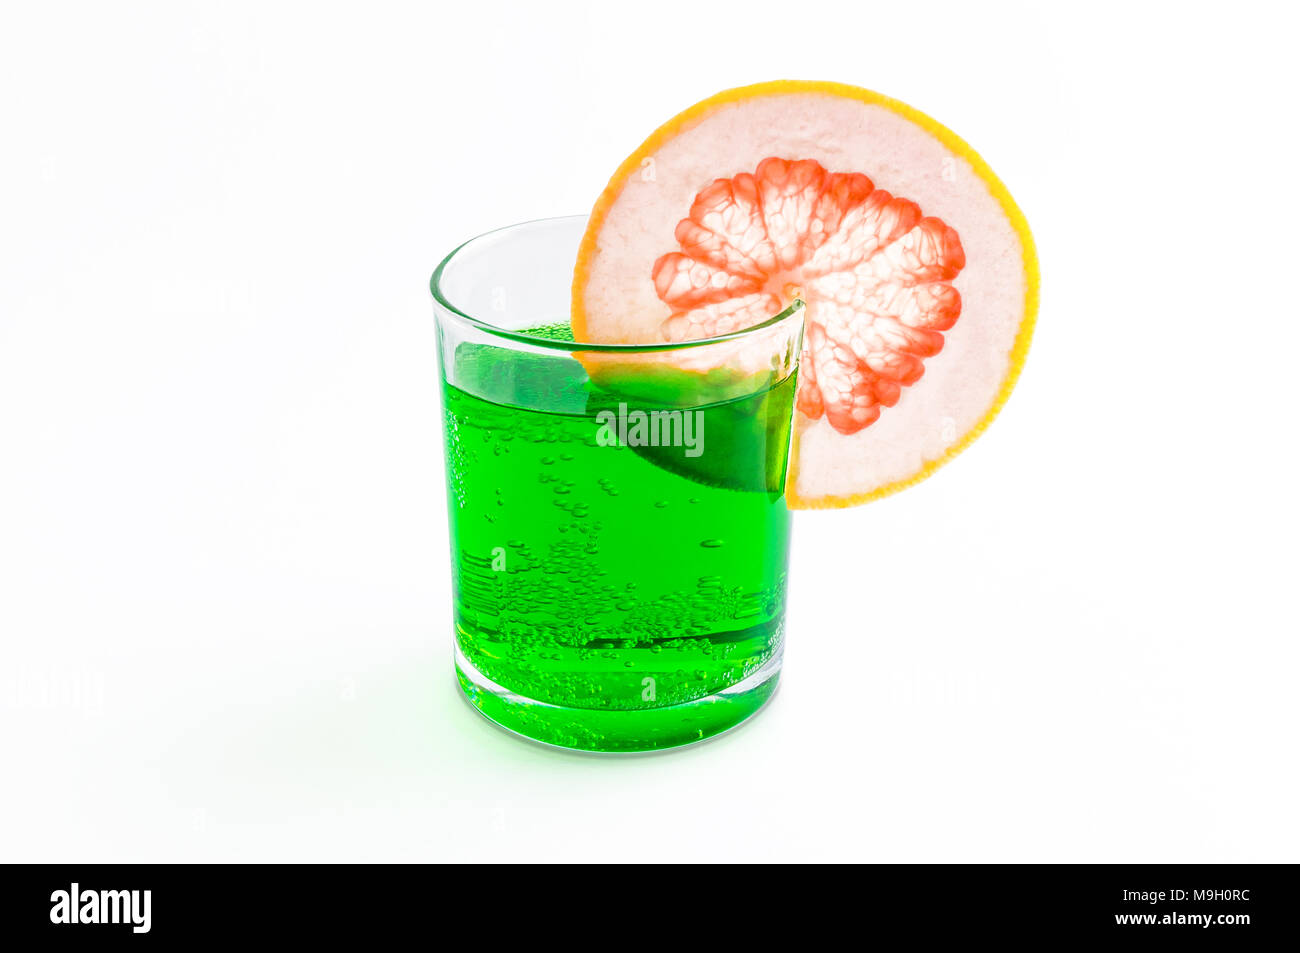 Cóctel de soda pomelo verde en el borde de un cristal transparente y aroma a menta de primavera verano aislado sobre fondo blanco Fotografía de - Alamy